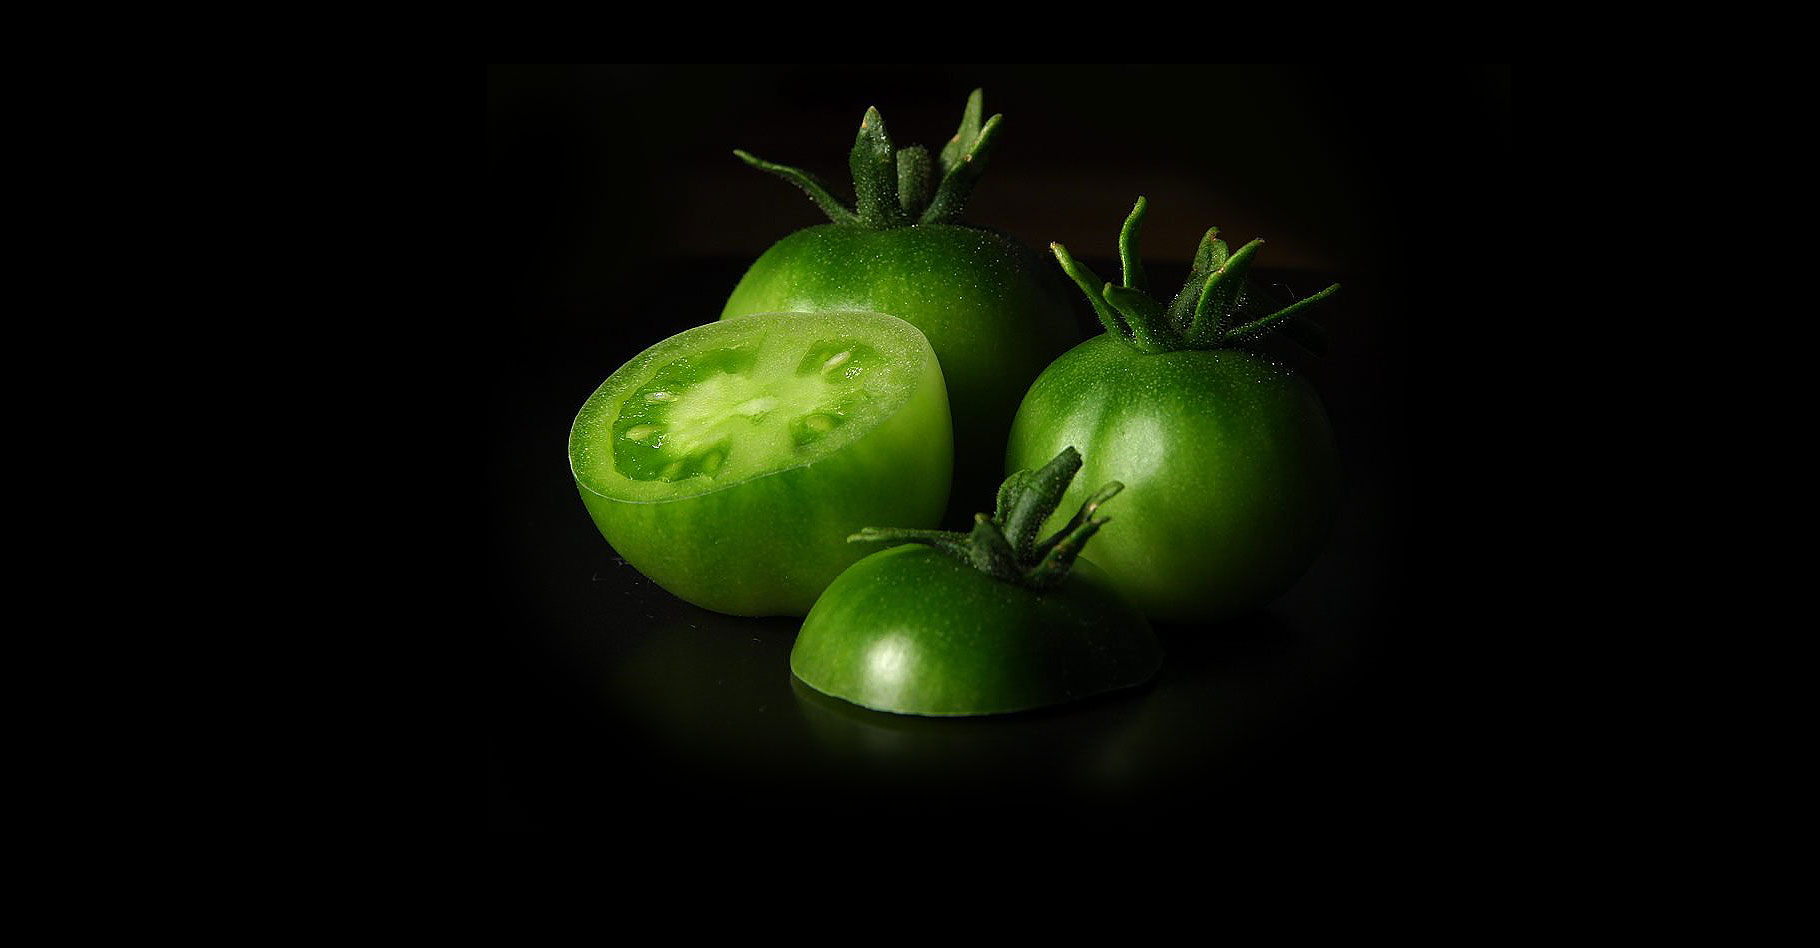 Des tomates de toutes les couleurs (blanches, vertes, jaunes…)